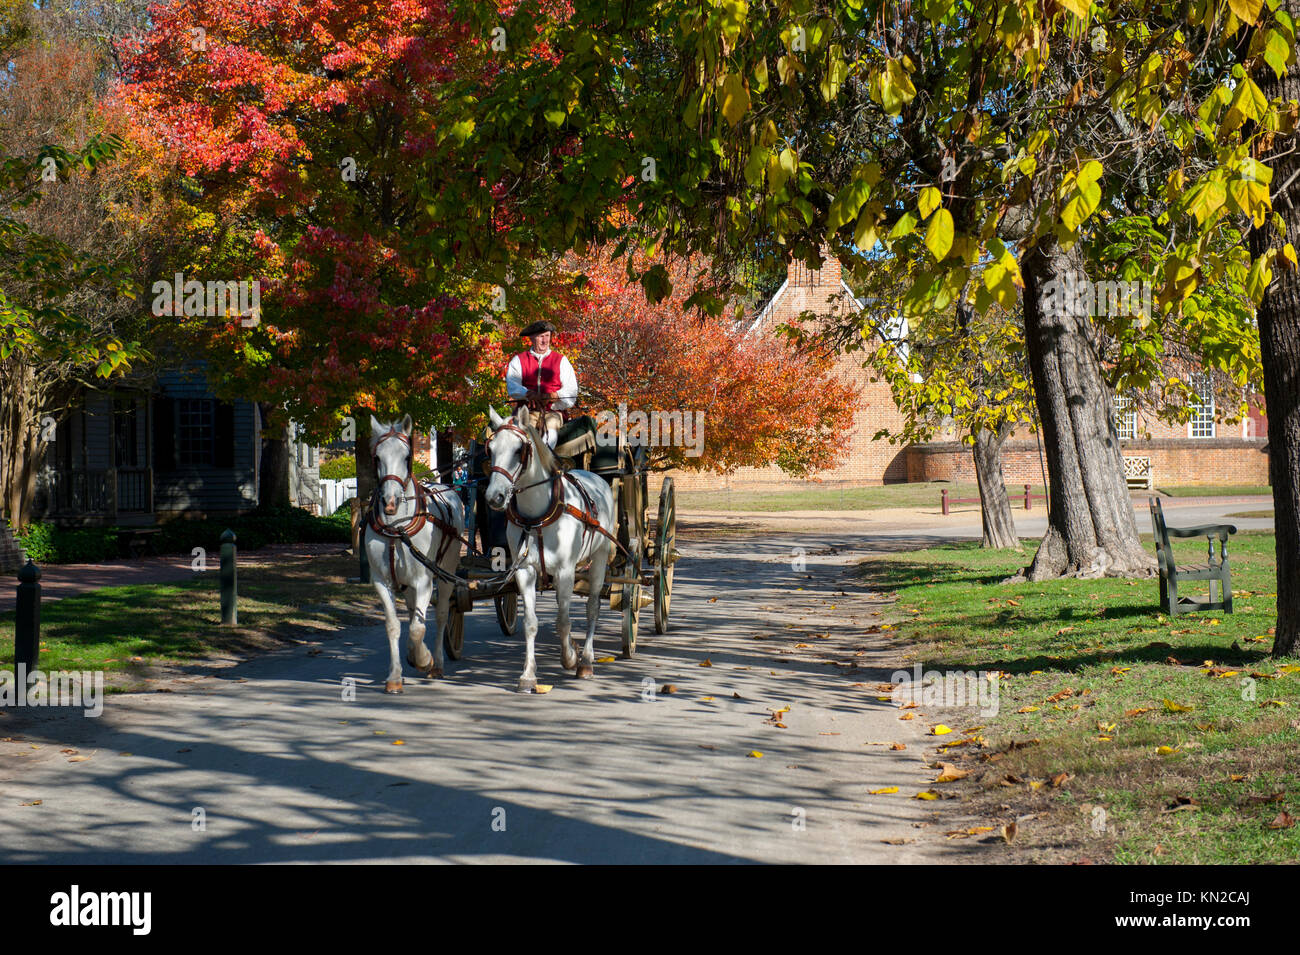 USA Virginia VA Williamsburg Colonial collection automne automne un homme conduisant une calèche sous les arbres des feuilles d'automne Banque D'Images